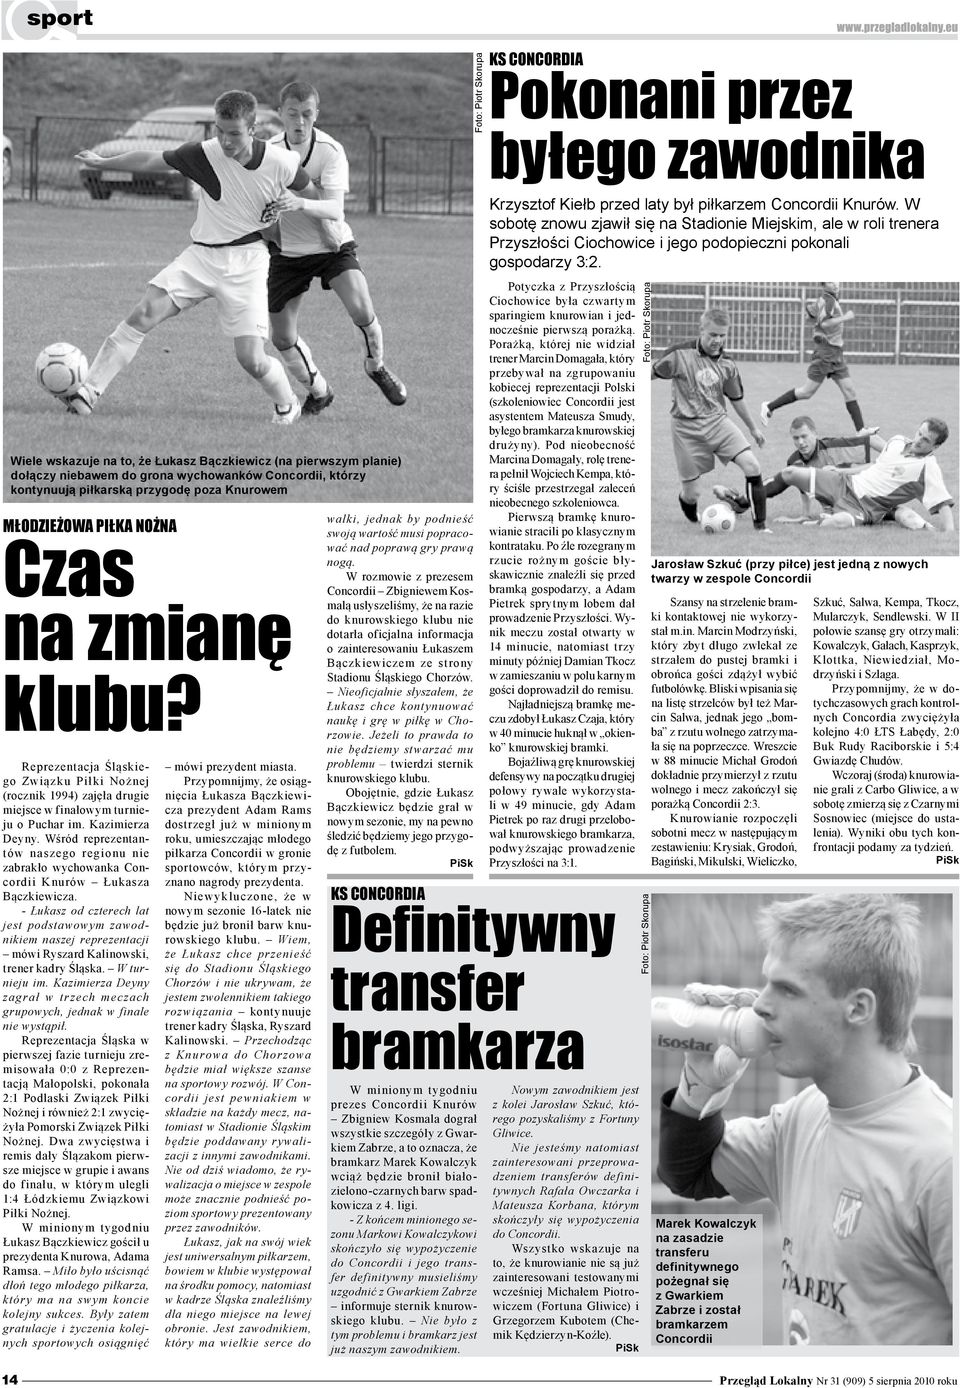 Reprezentacja Śląskiego Związku Piłki Nożnej (rocznik 1994) zajęła drugie miejsce w finałowym turnieju o Puchar im. Kazimierza Deyny.